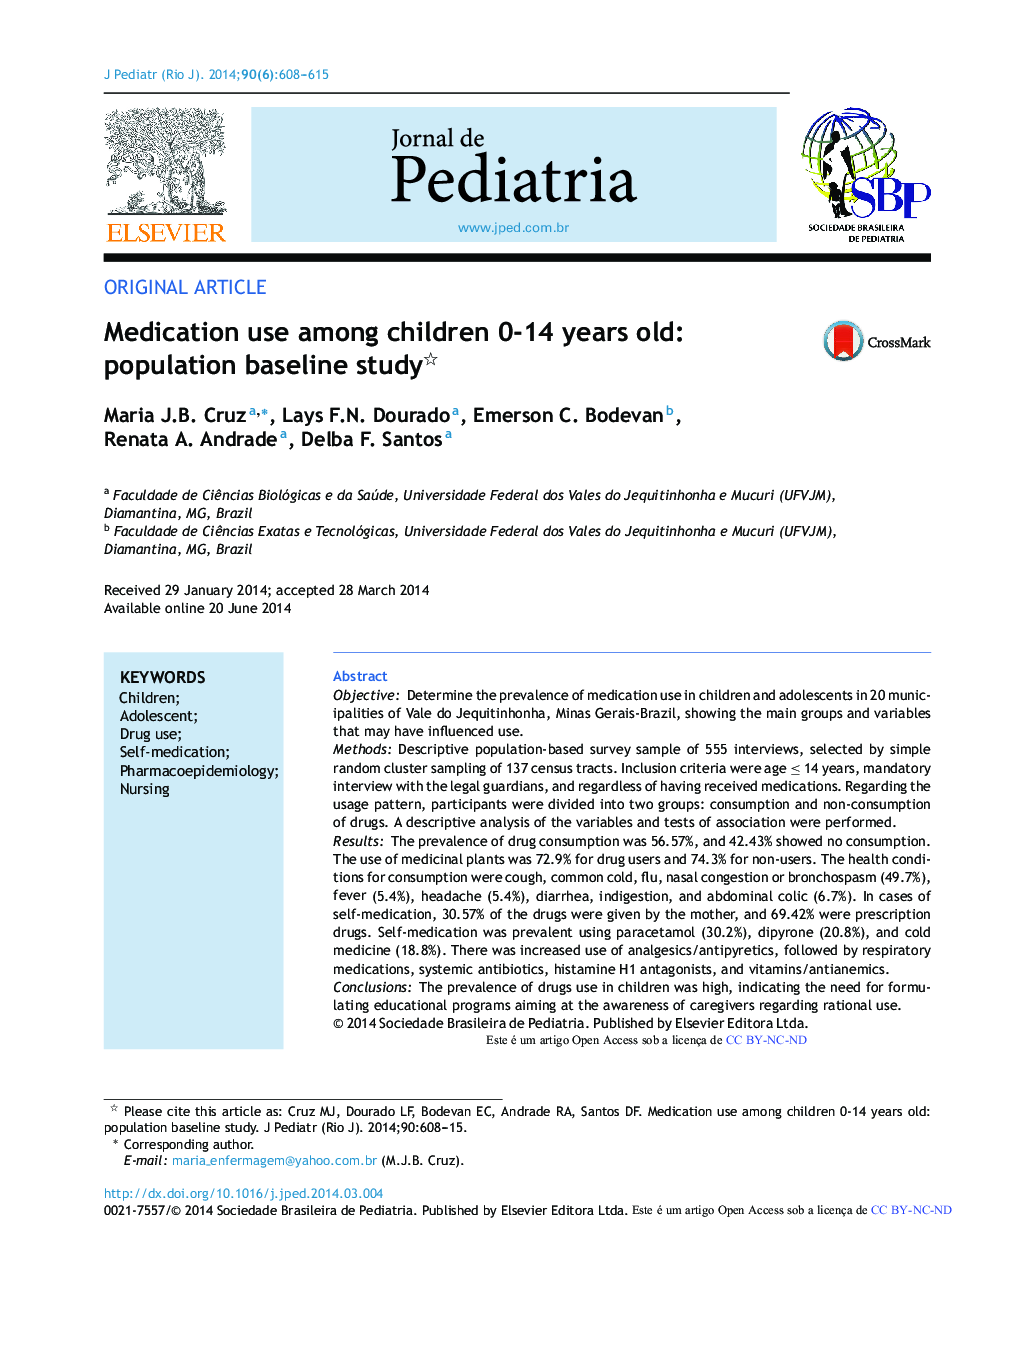 استفاده از دارو در بین کودکان 14-14 ساله: مطالعه پایه جمعیت 